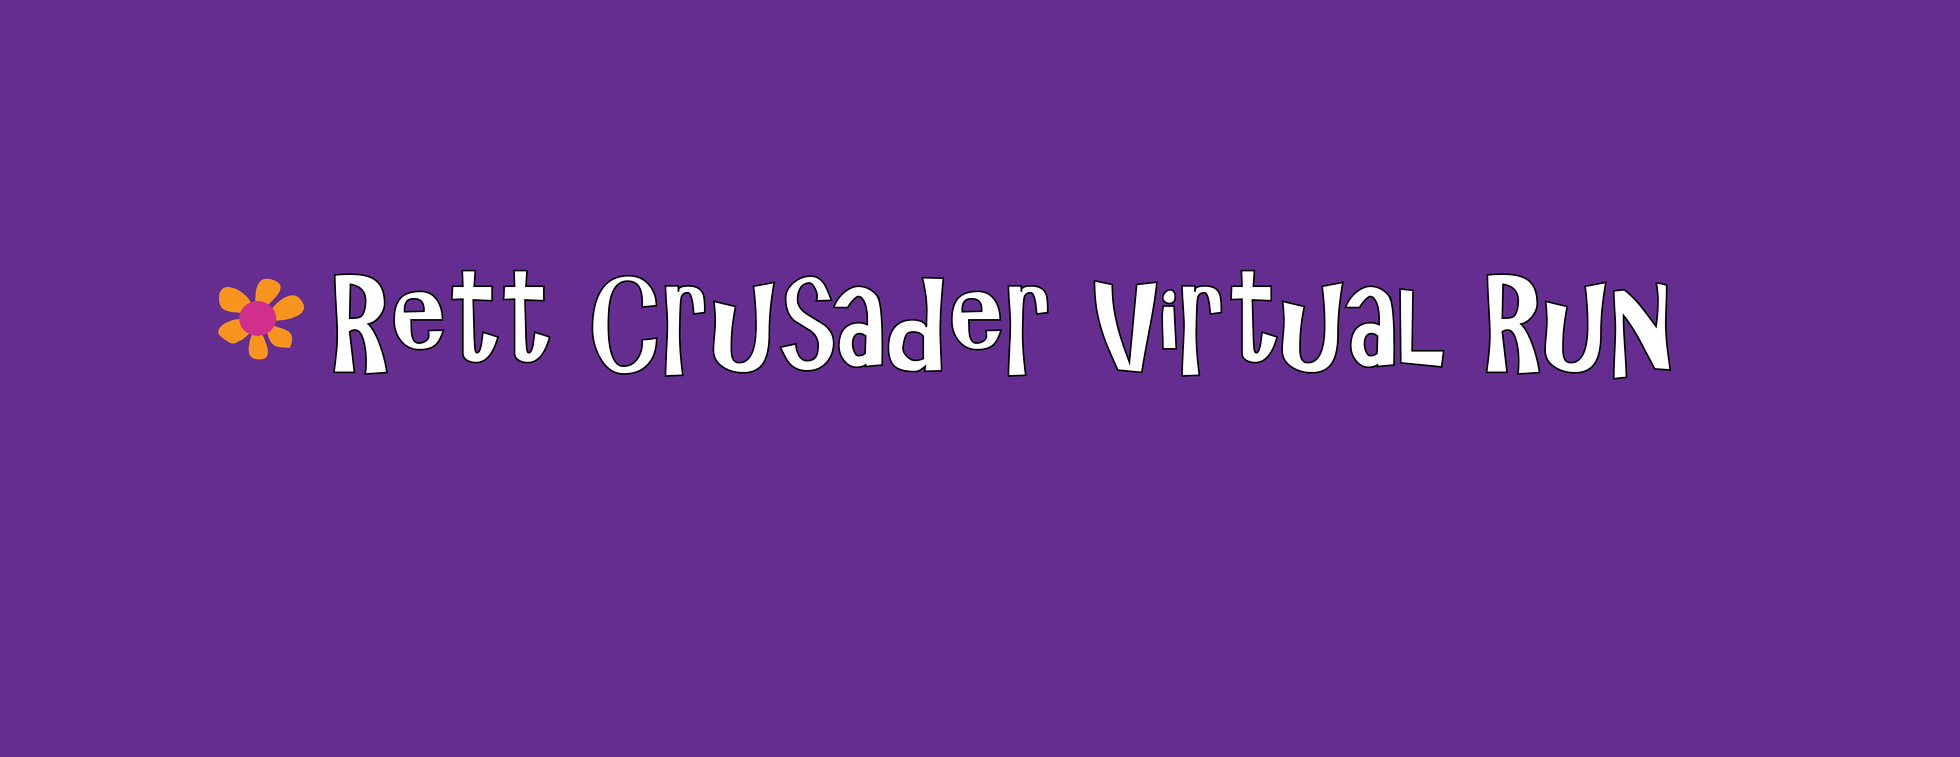 Rett Crusader Virtual Run